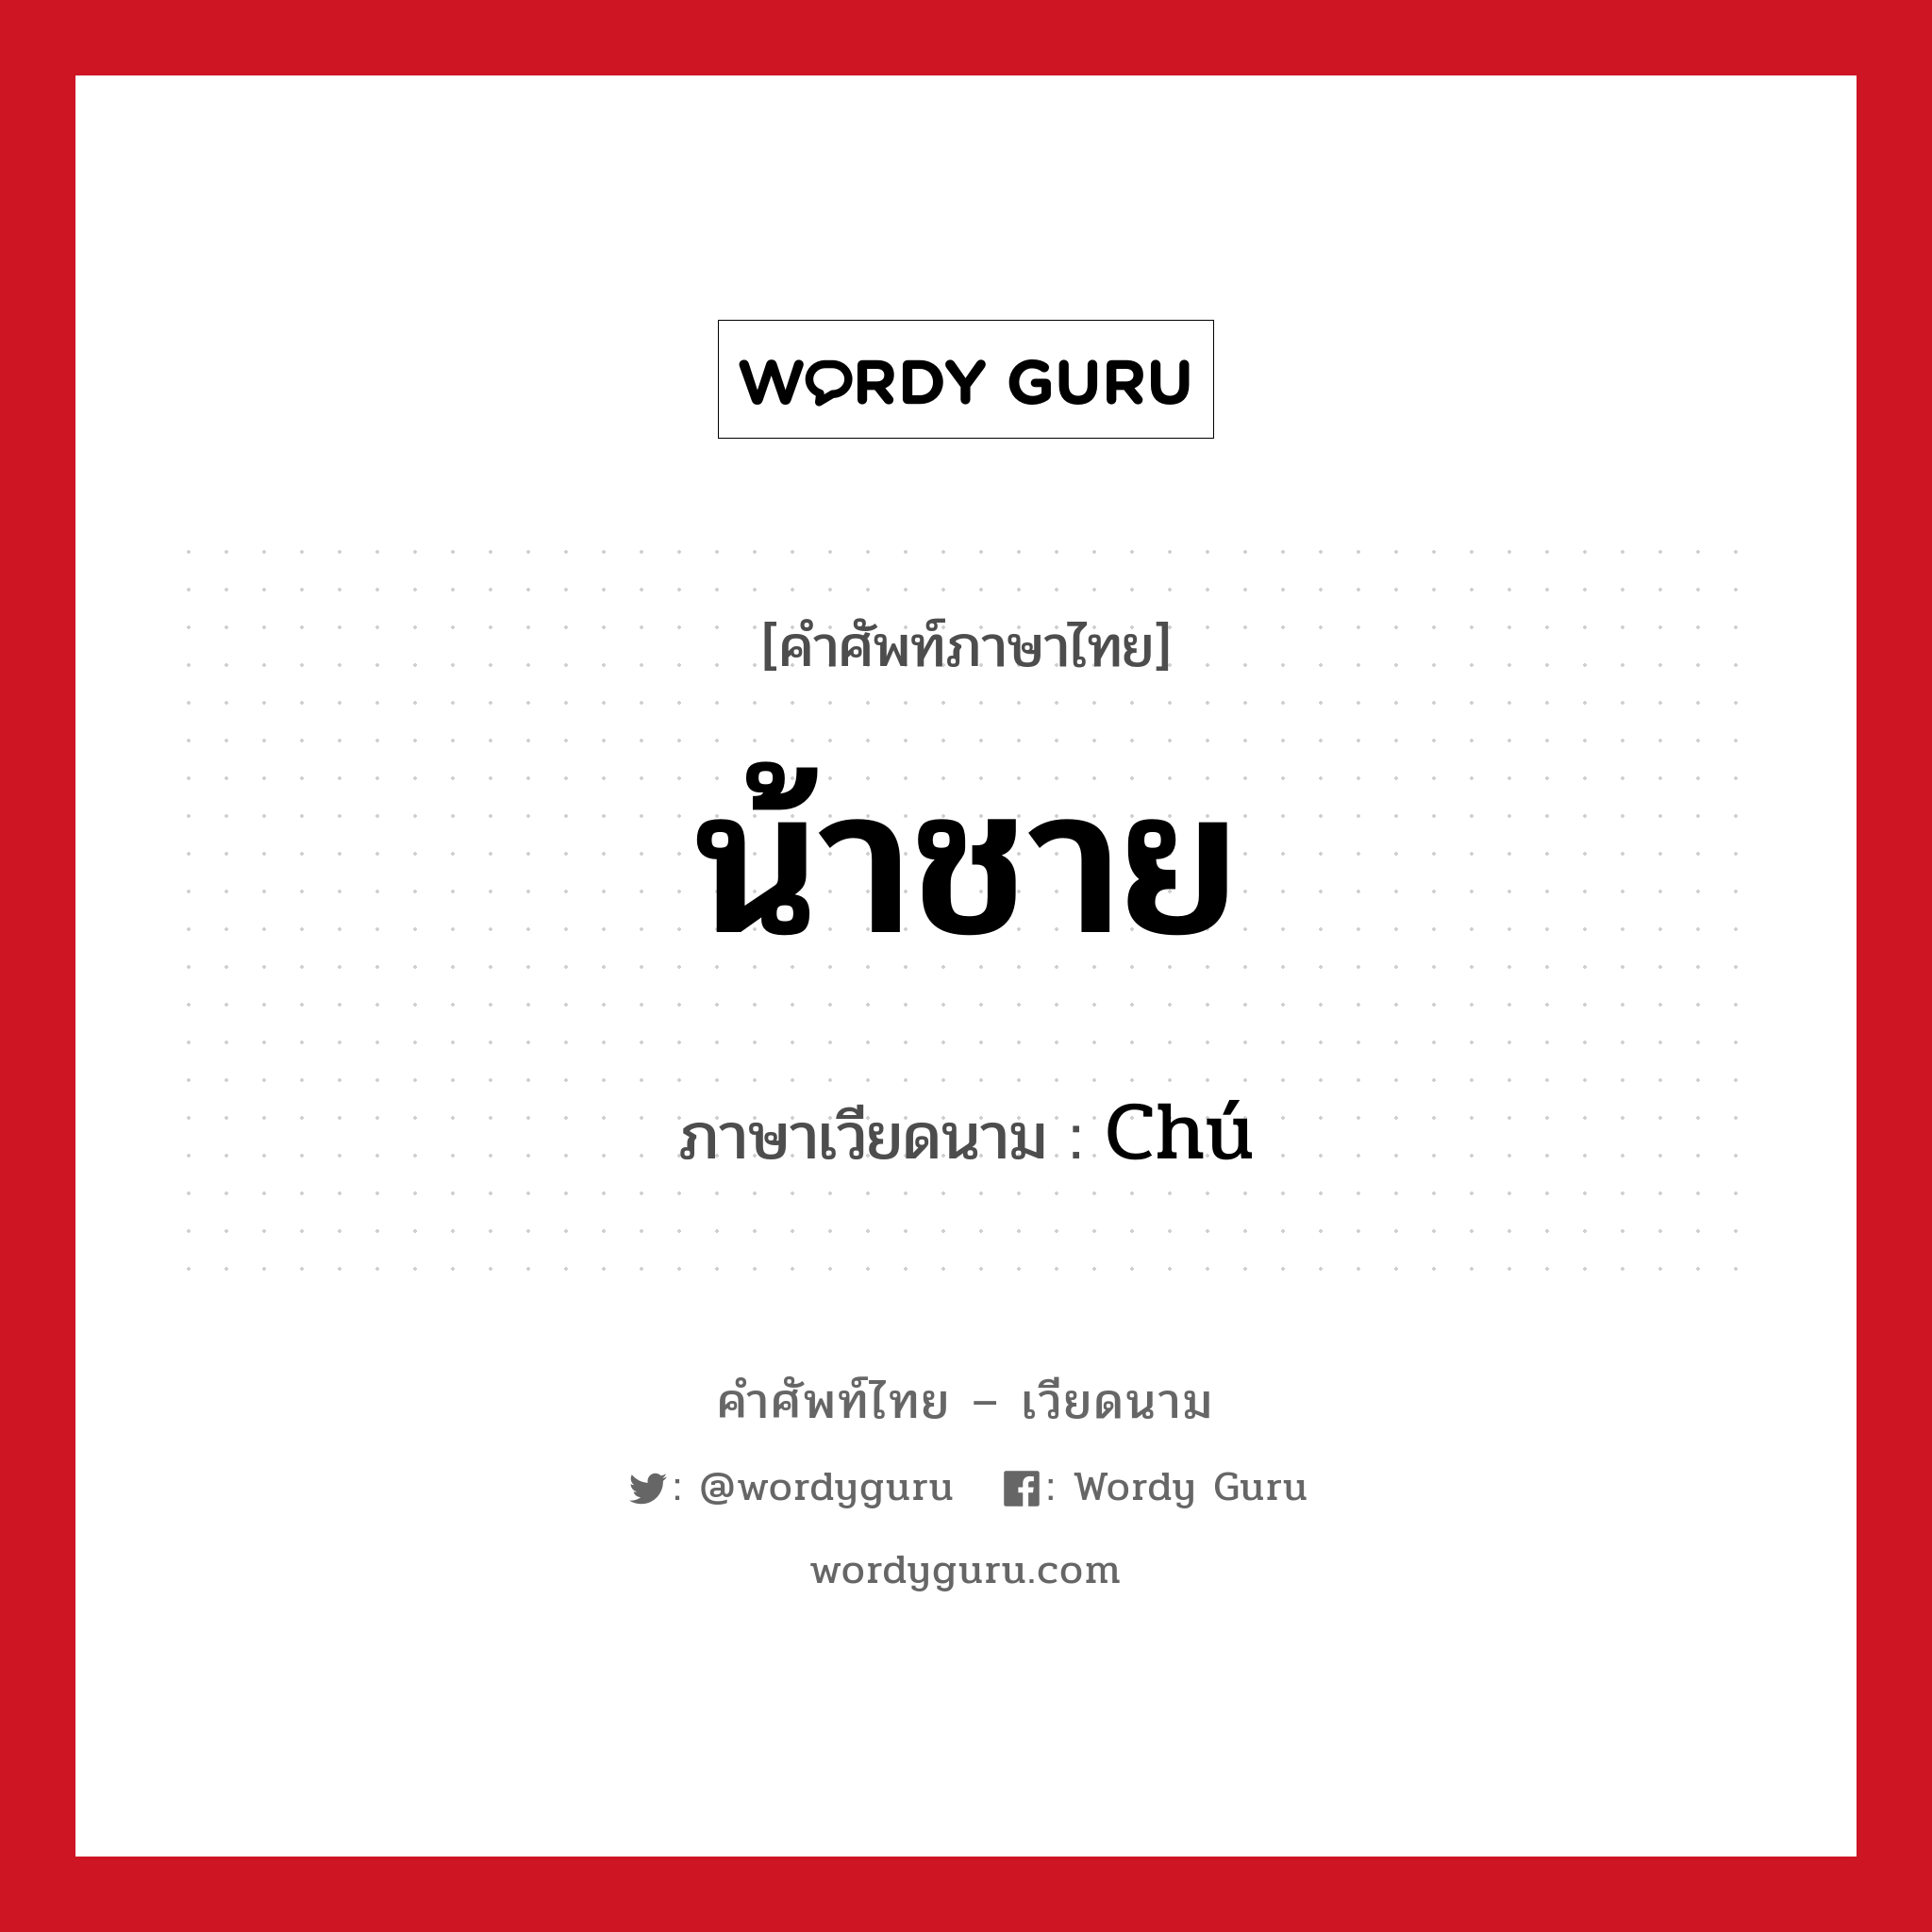 น้าชาย ภาษาเวียดนามคืออะไร, คำศัพท์ภาษาไทย - เวียดนาม น้าชาย ภาษาเวียดนาม Chú หมวด เครือญาติ หมวด เครือญาติ